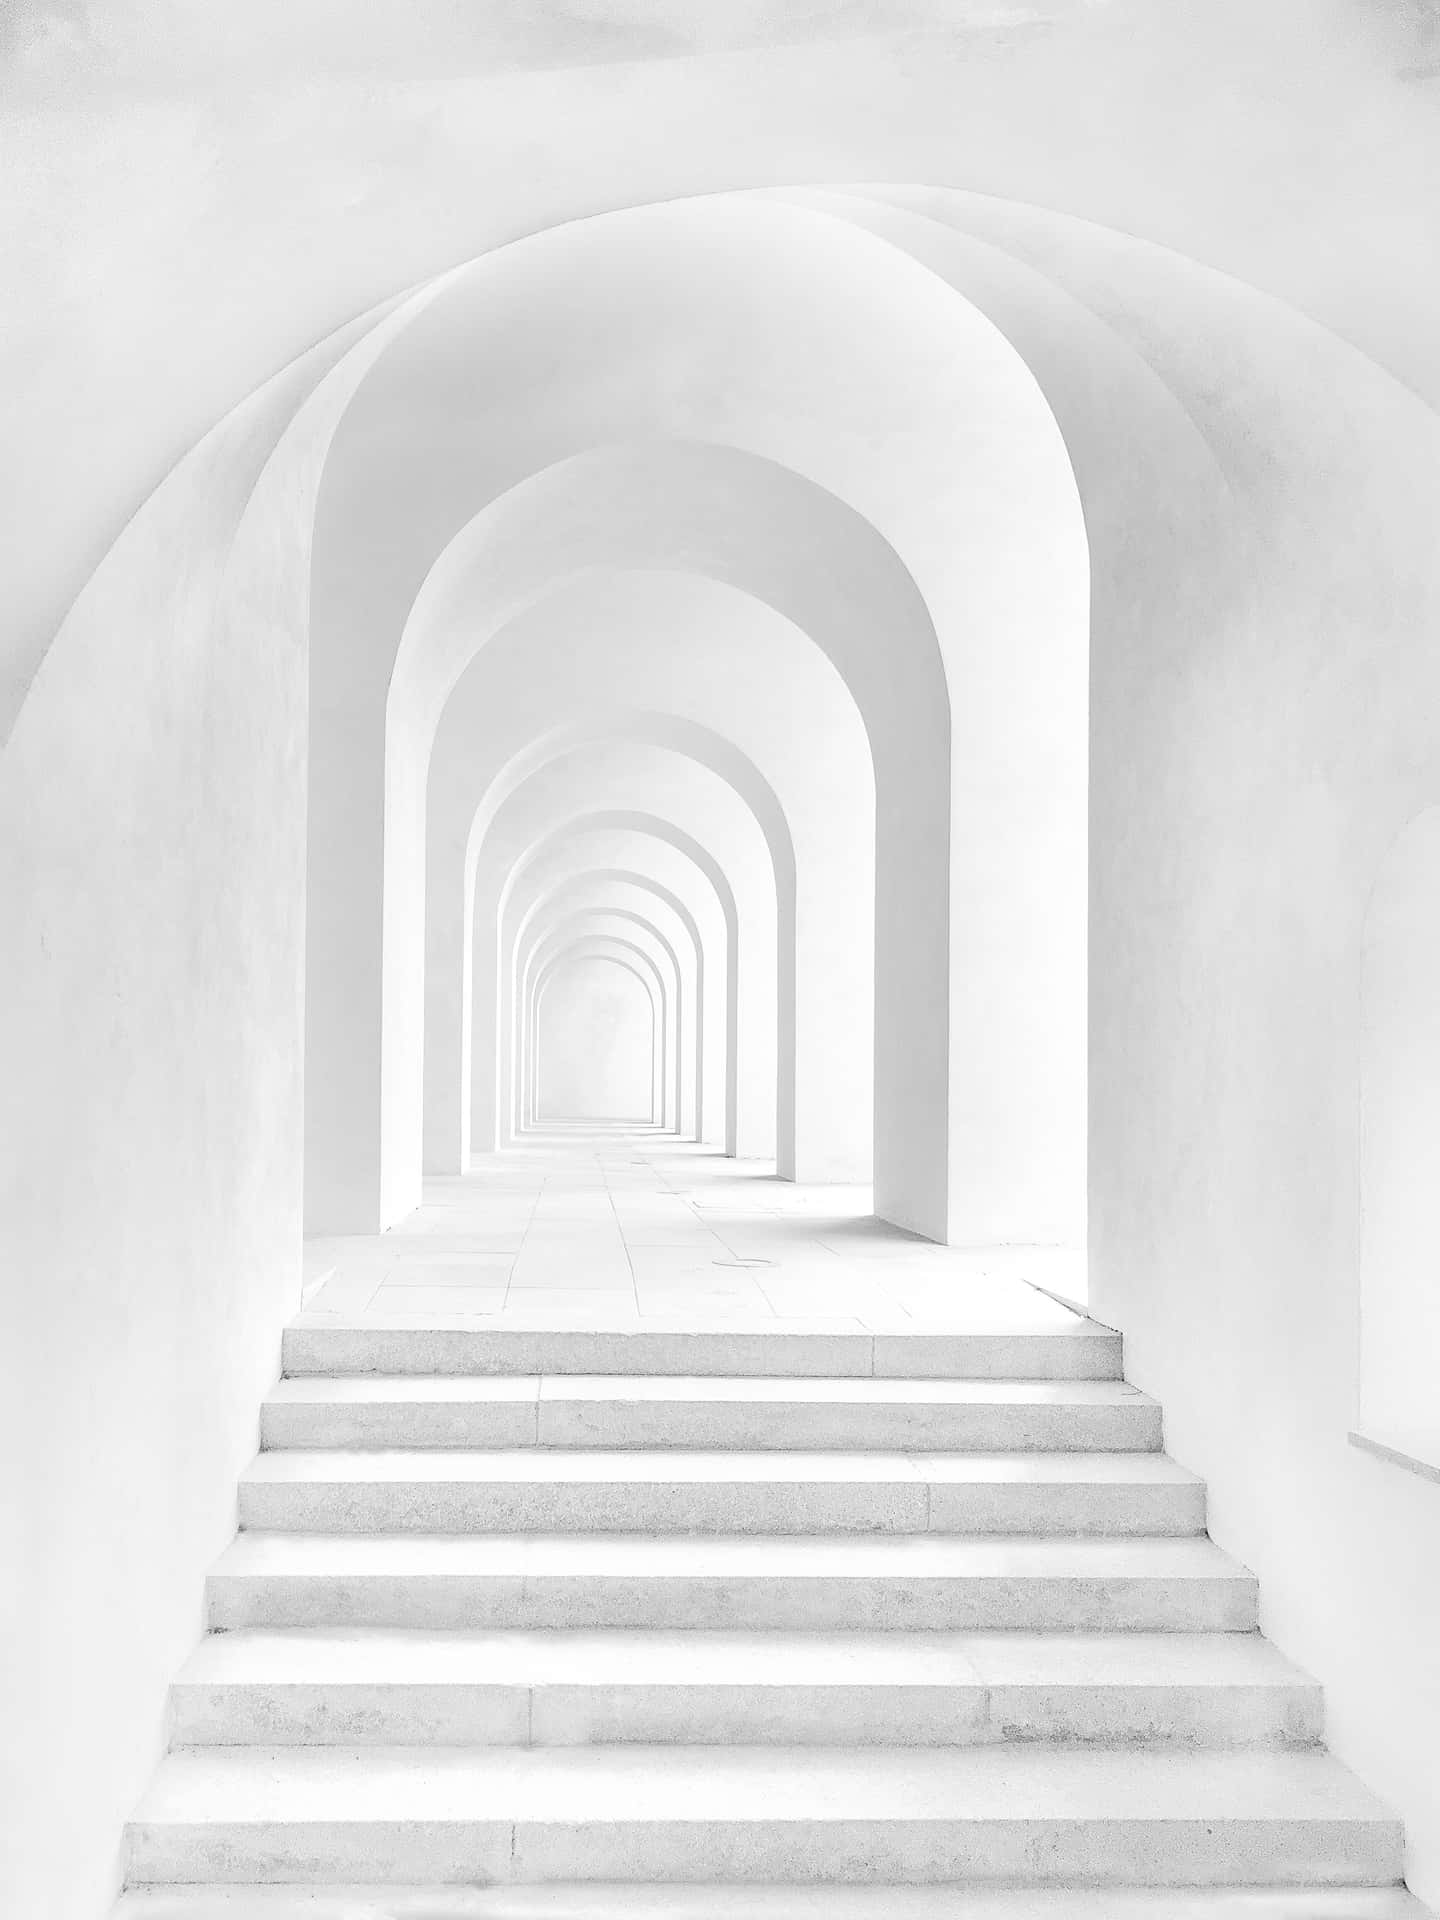 Papelde Parede De Imagem Branca Com Escadas Em Arco.